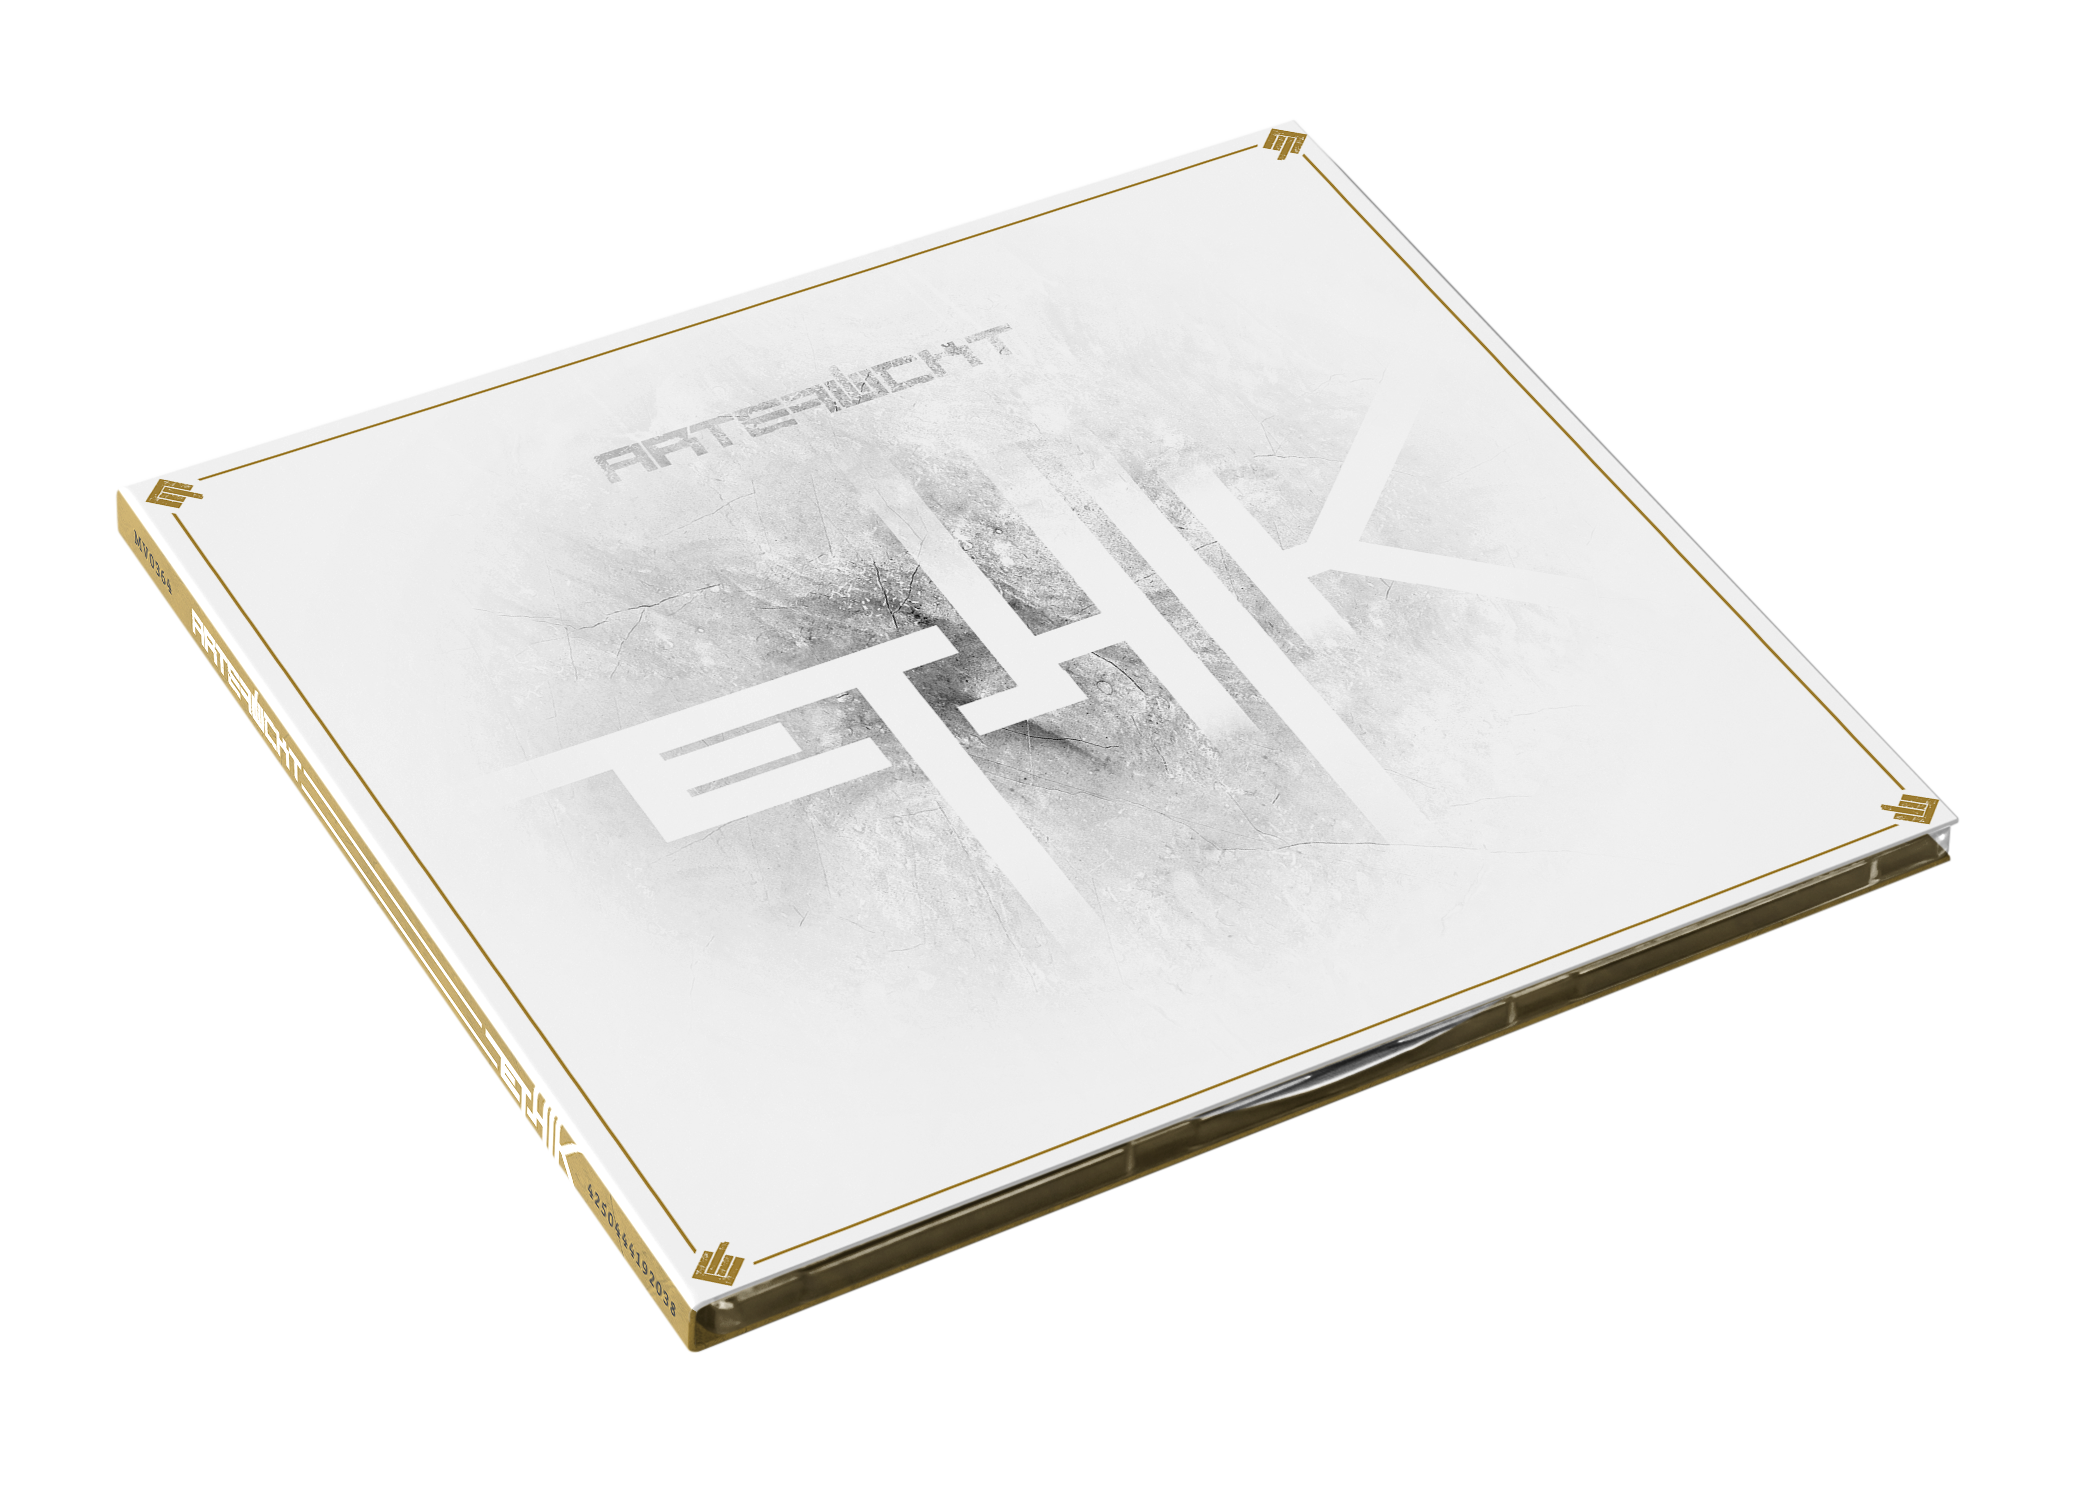 Ethik (CD Digipak)